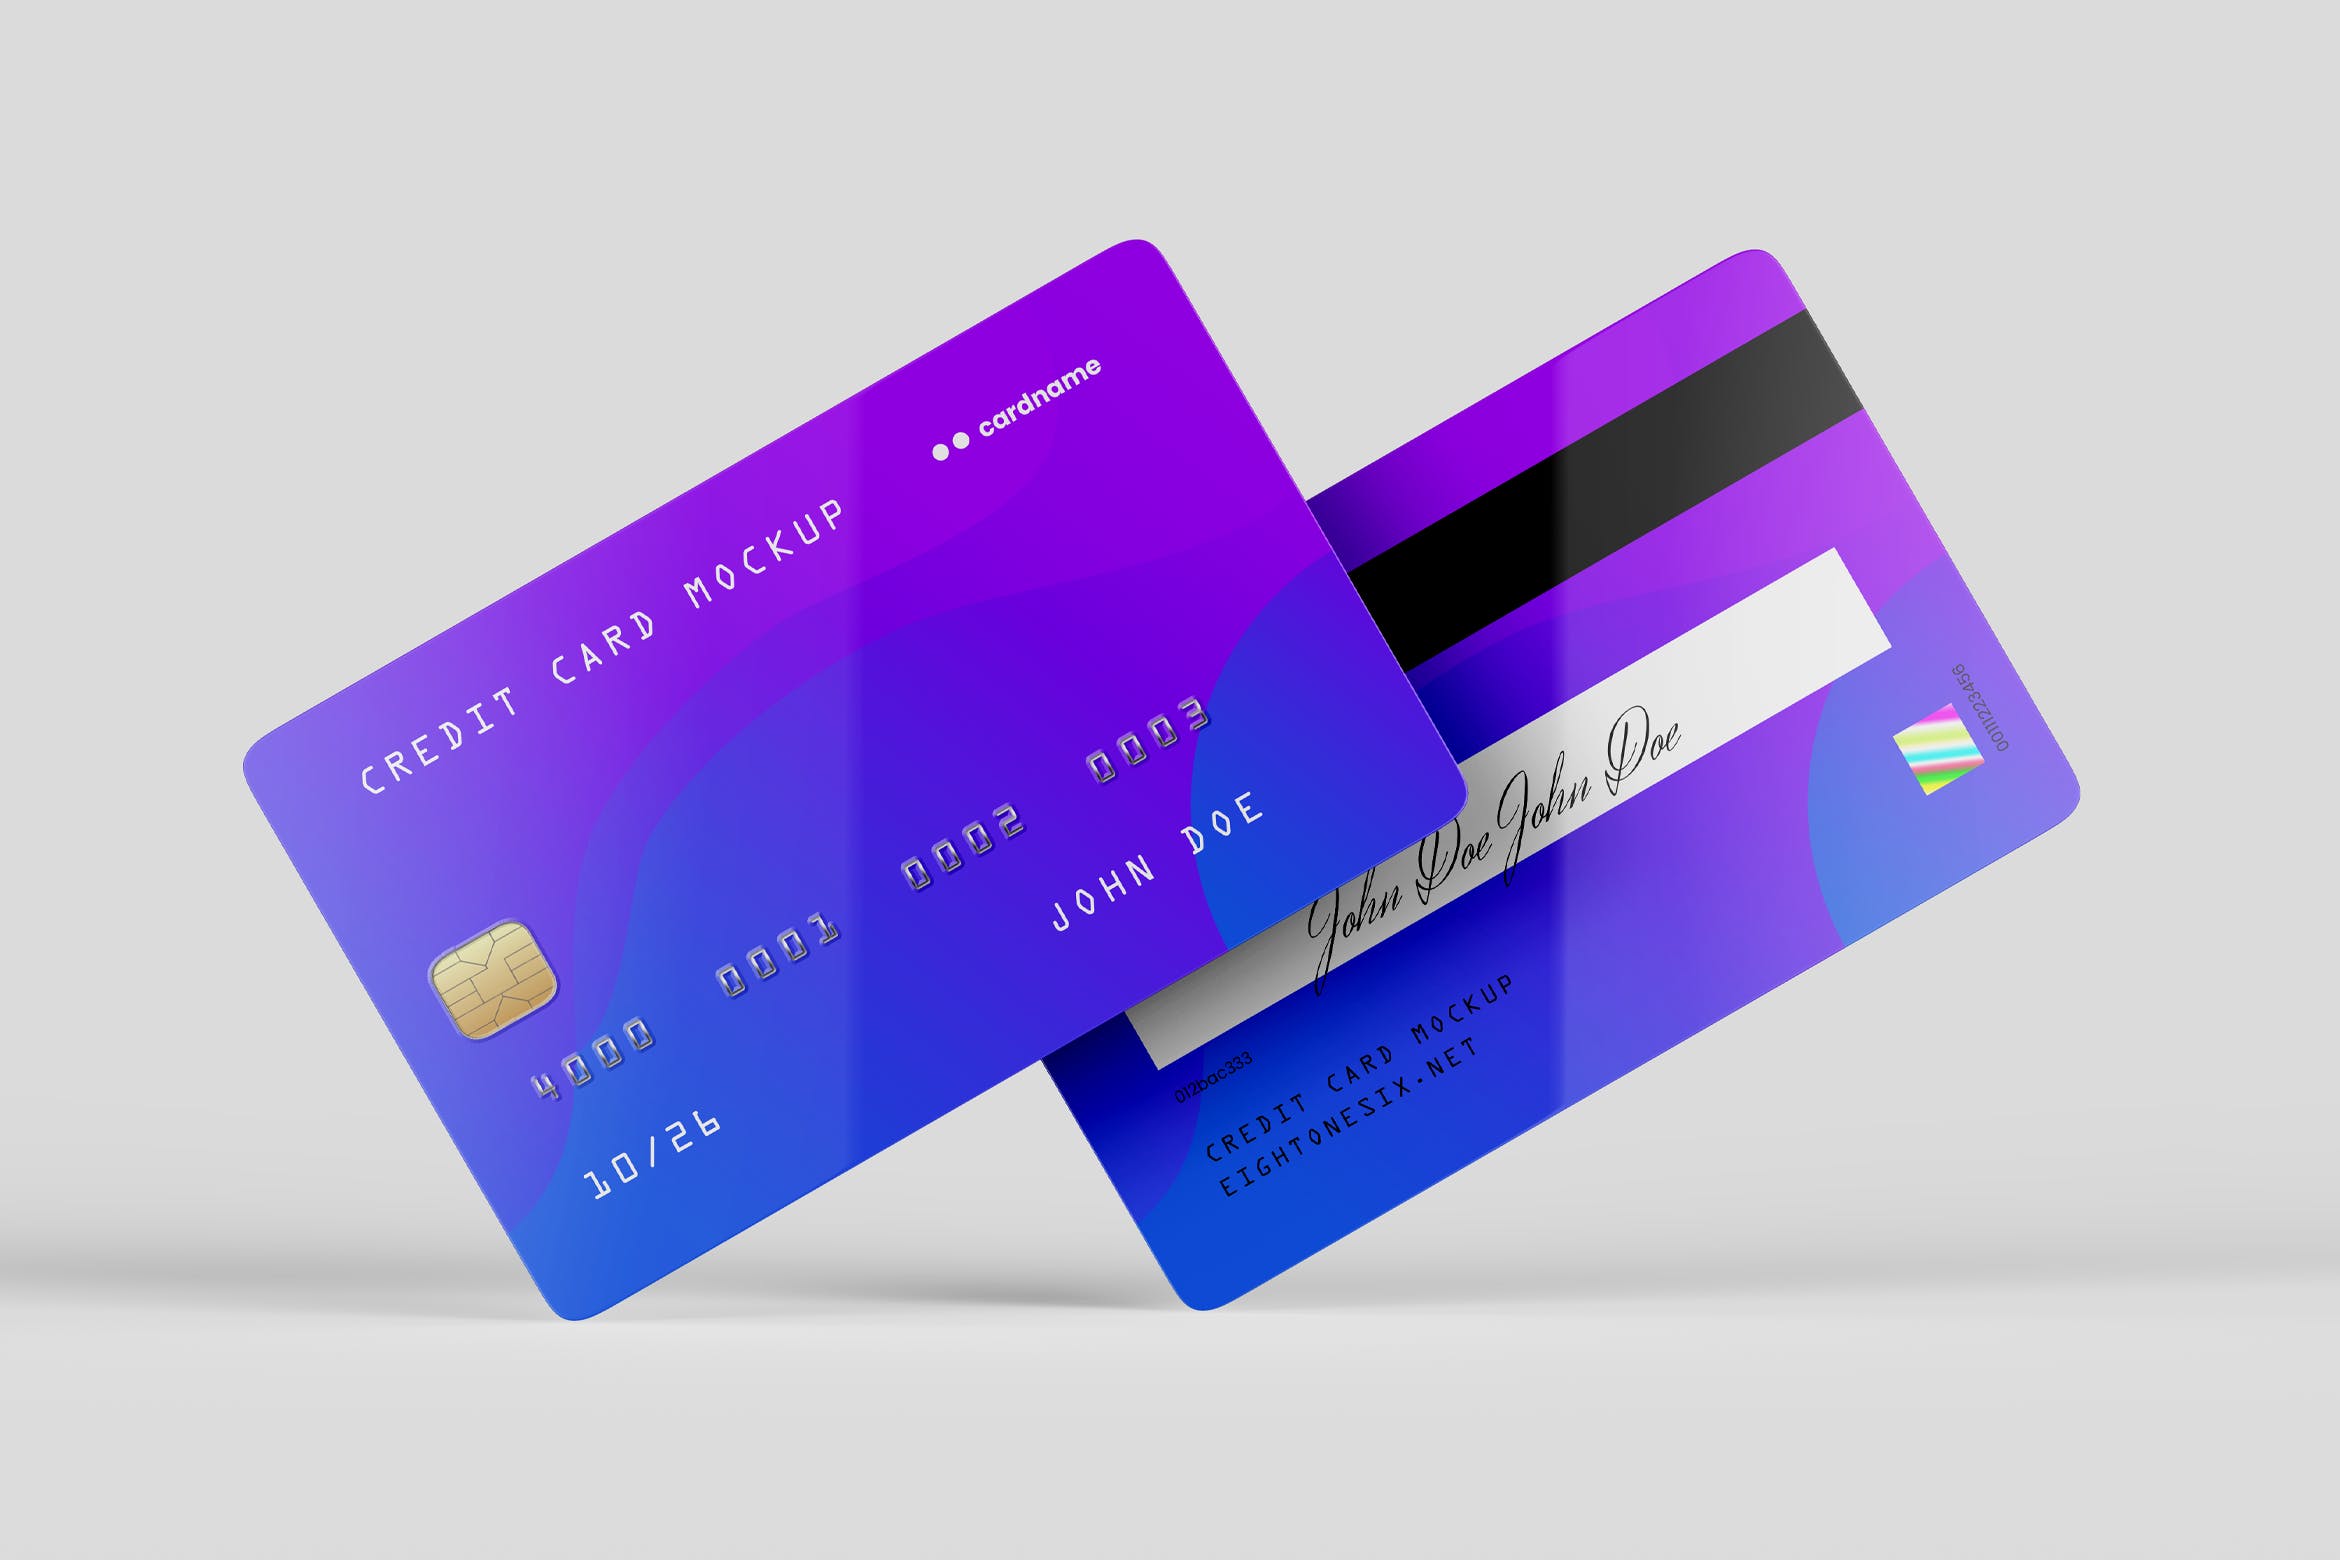 信用卡/银行卡/会员卡设计效果图样机蚂蚁素材精选模板 Credit Card Mock-Up Template插图